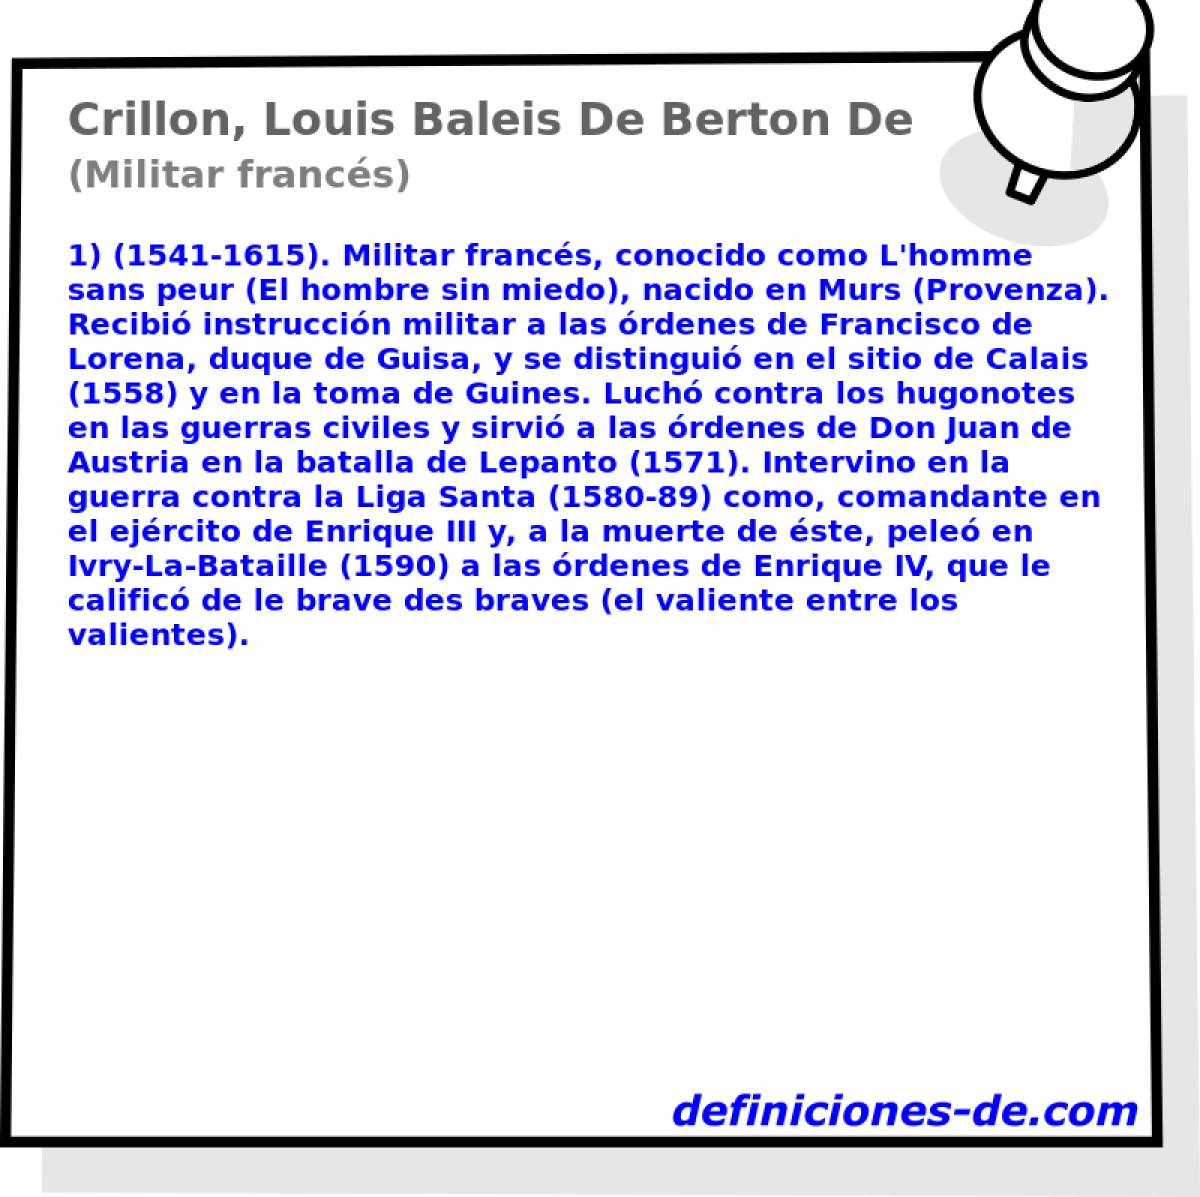 Crillon, Louis Baleis De Berton De (Militar francs)